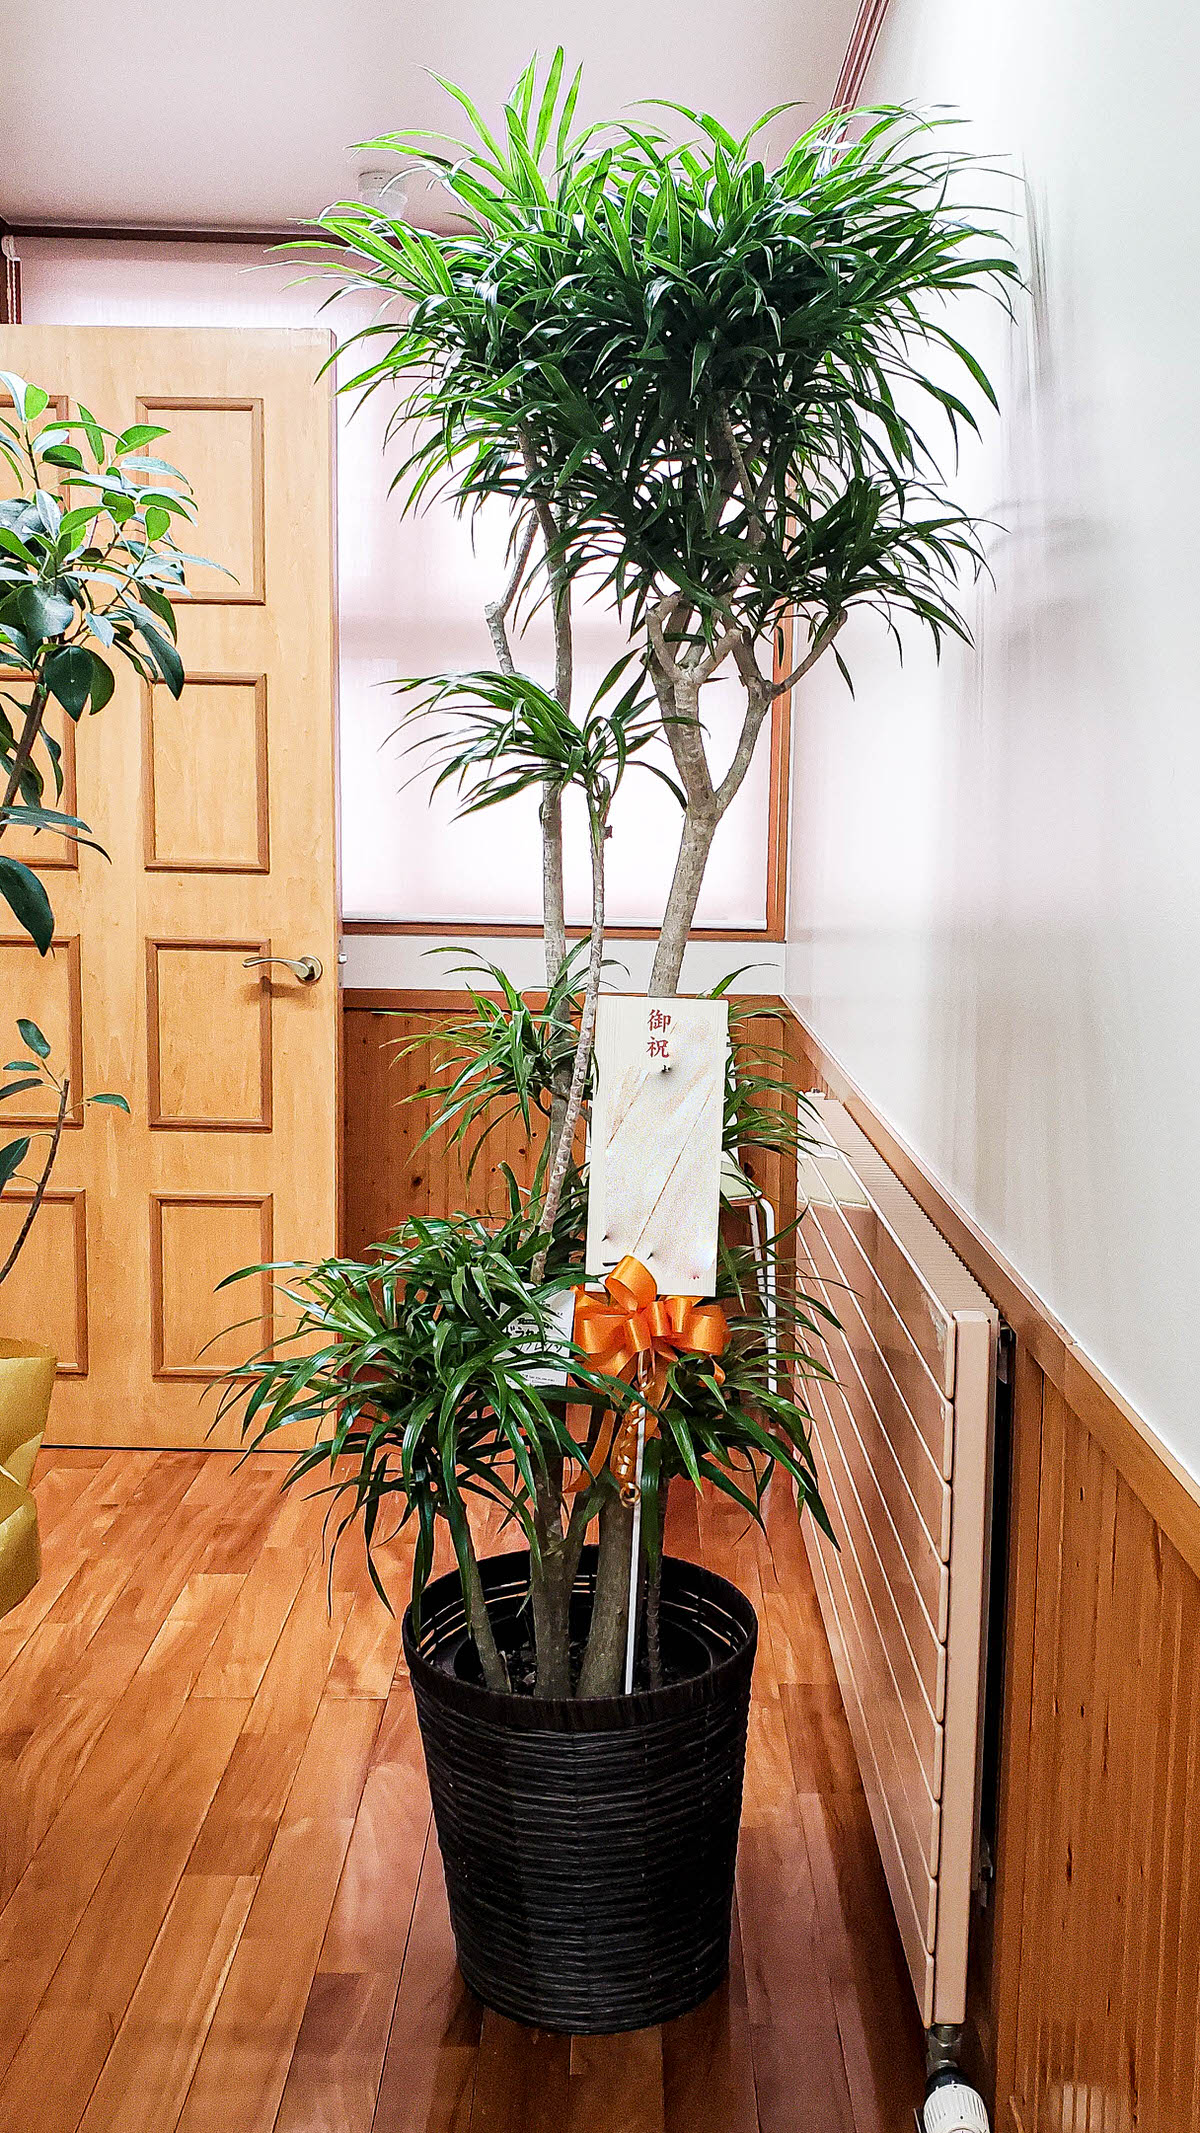 長野の花屋 ヌボー生花店 事例紹介 事例紹介 クリニック開院の御祝いに観葉植物の贈り物